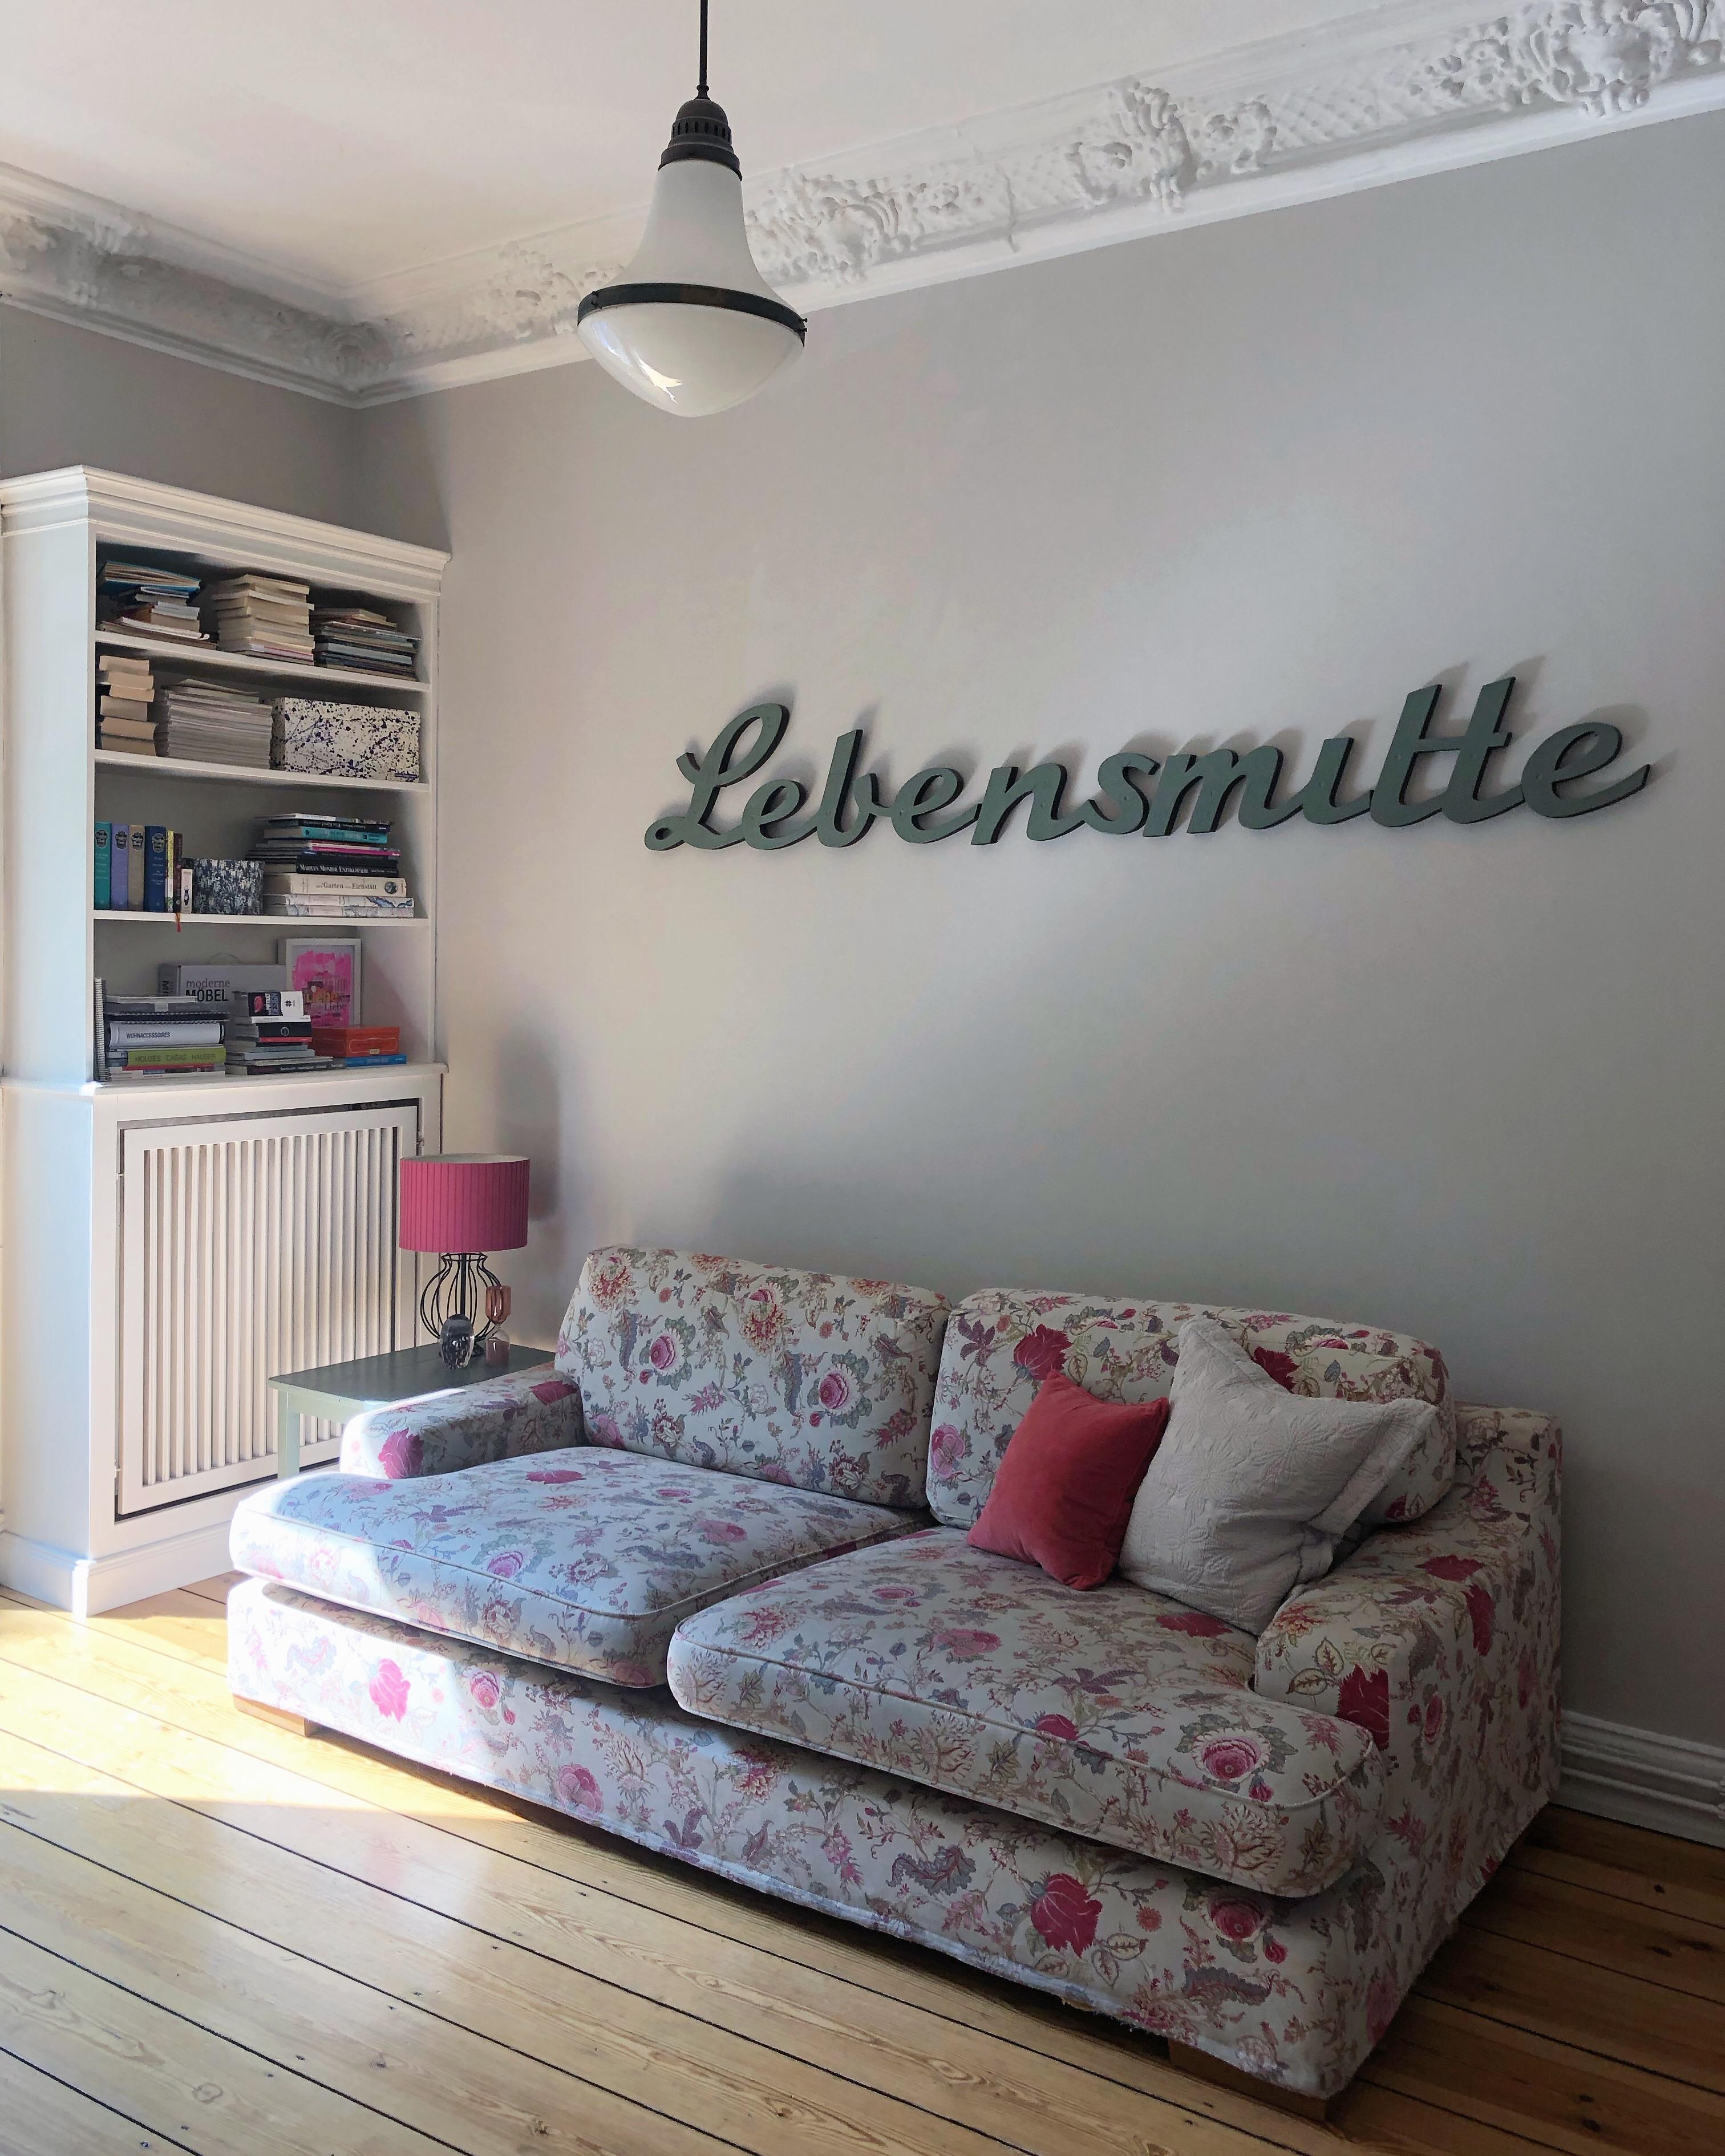 #lebensmitte #wohnzimmer #interior #homevibes #vintage #altbauliebe #couchliebt #couchstyle #sofa #stuck